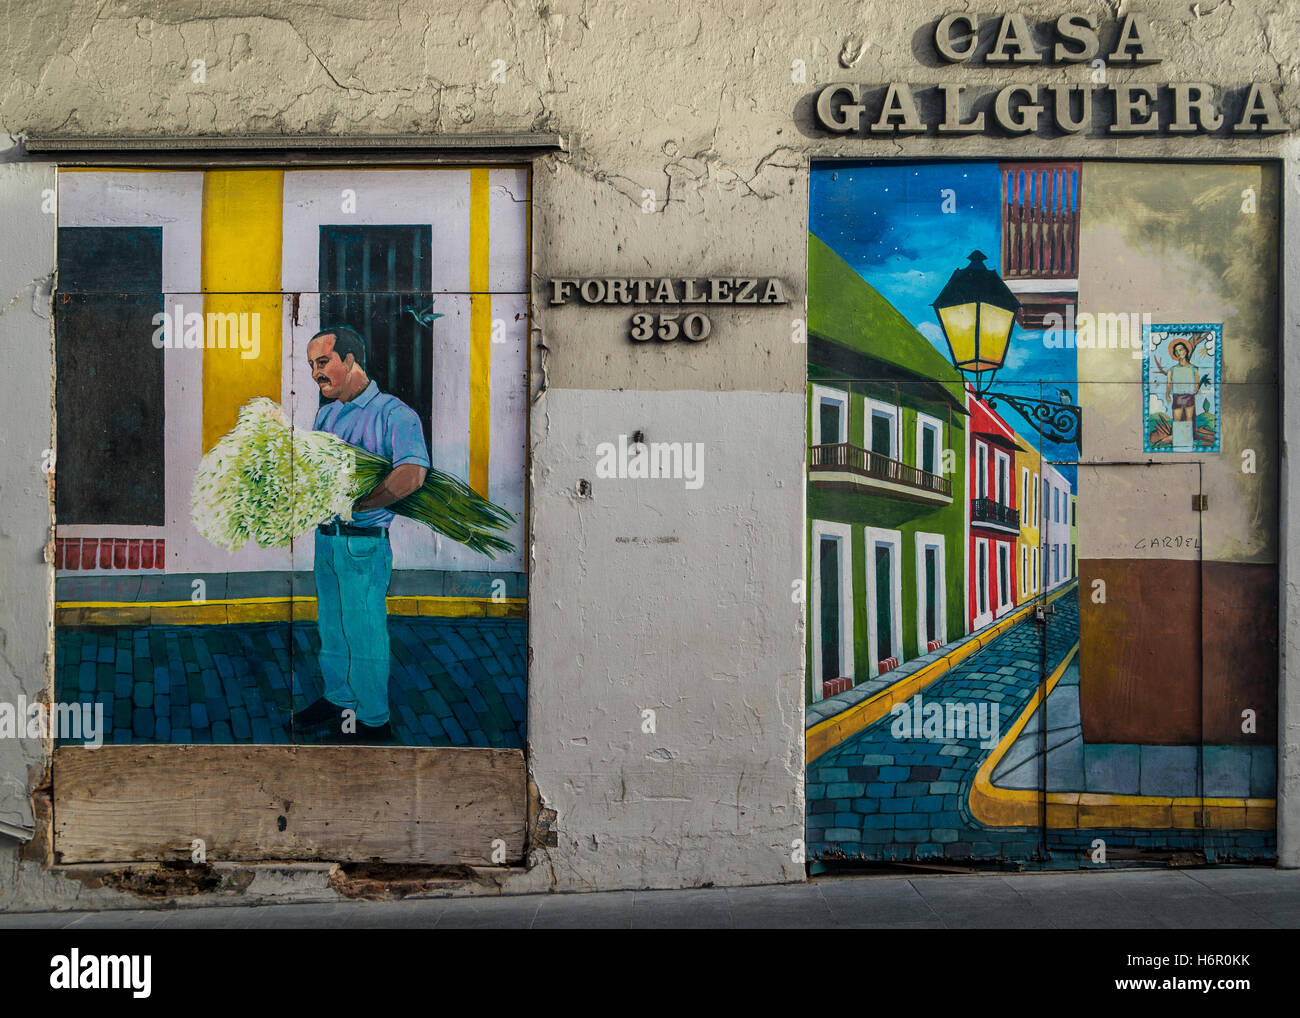 Casa Galguera murale sur la Calle Fortaleza dans le Vieux San Juan (Puerto Rico) Banque D'Images